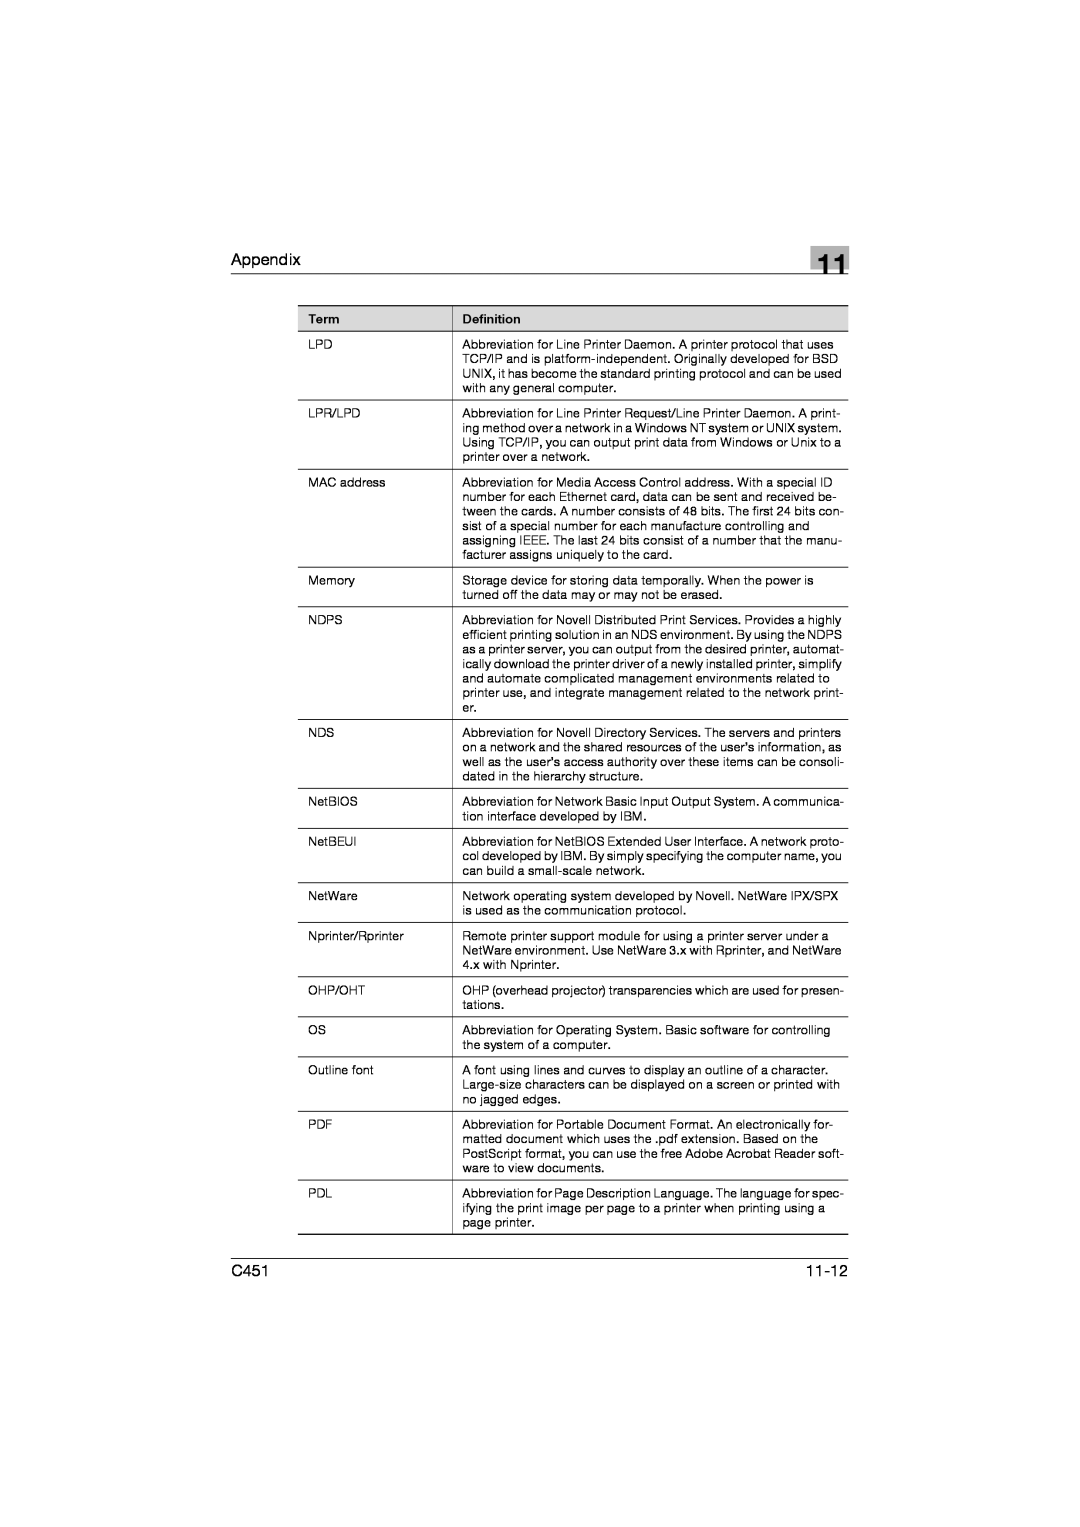 Konica Minolta C451 manual Appendix, 11-12 